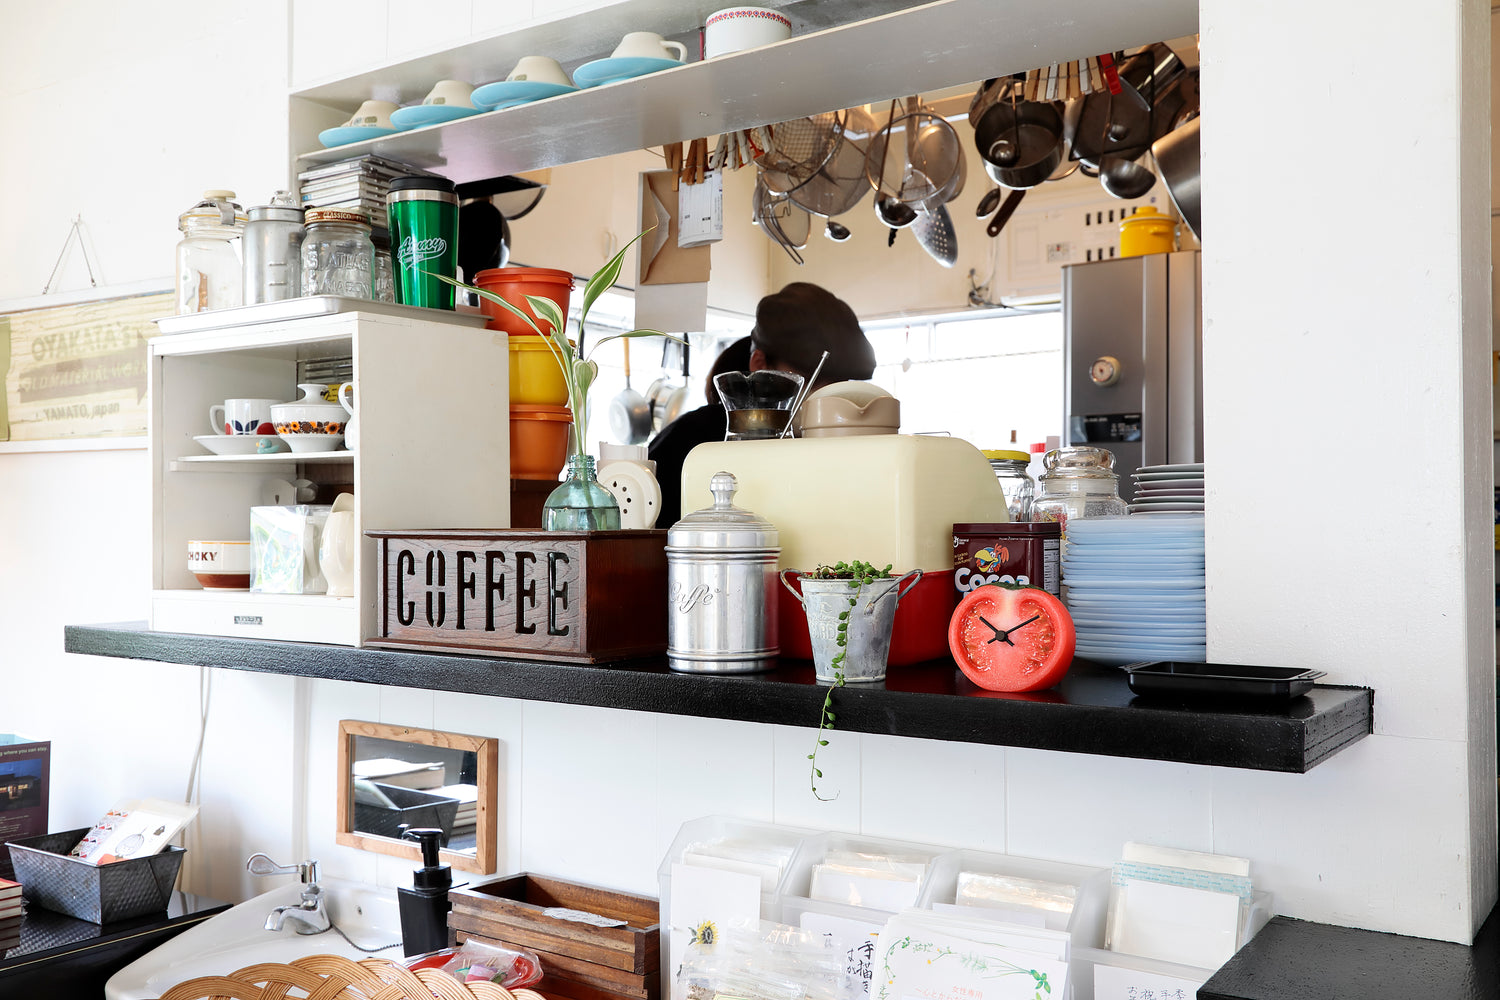 元祖食品サンプル屋「Replica Food Clock トマト」のキッチンの横に置いたイメージ画像です。